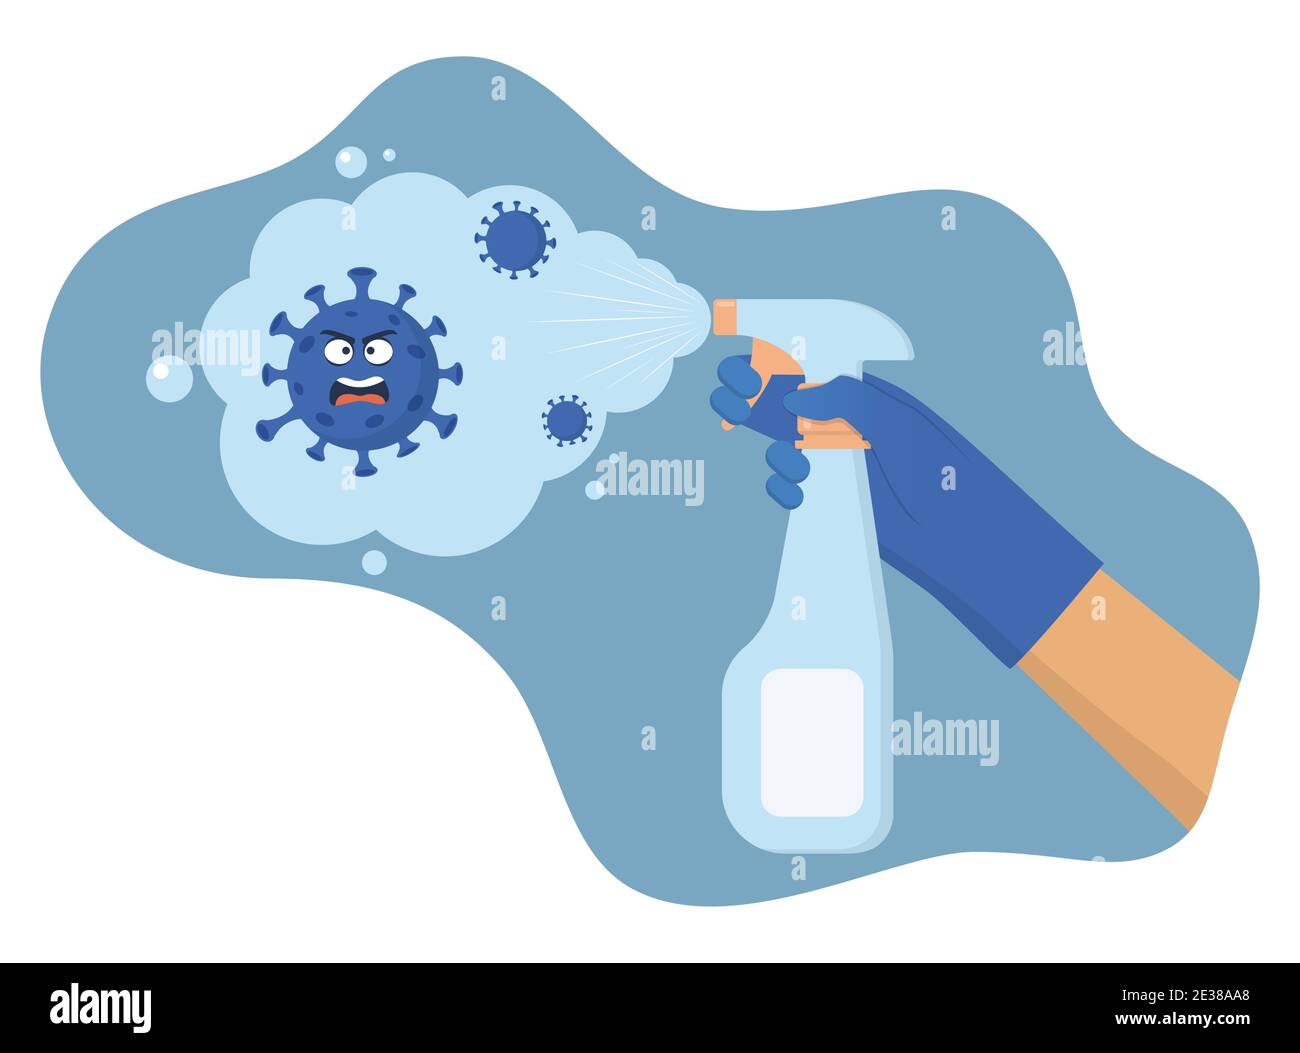 Personnage du coronavirus peur de vaporiser de l'assainisseur. La main dans un gant de protection contient un désinfectant en aérosol. Lutter contre le covid 19 avec la désinfection. Vecteur il Illustration de Vecteur